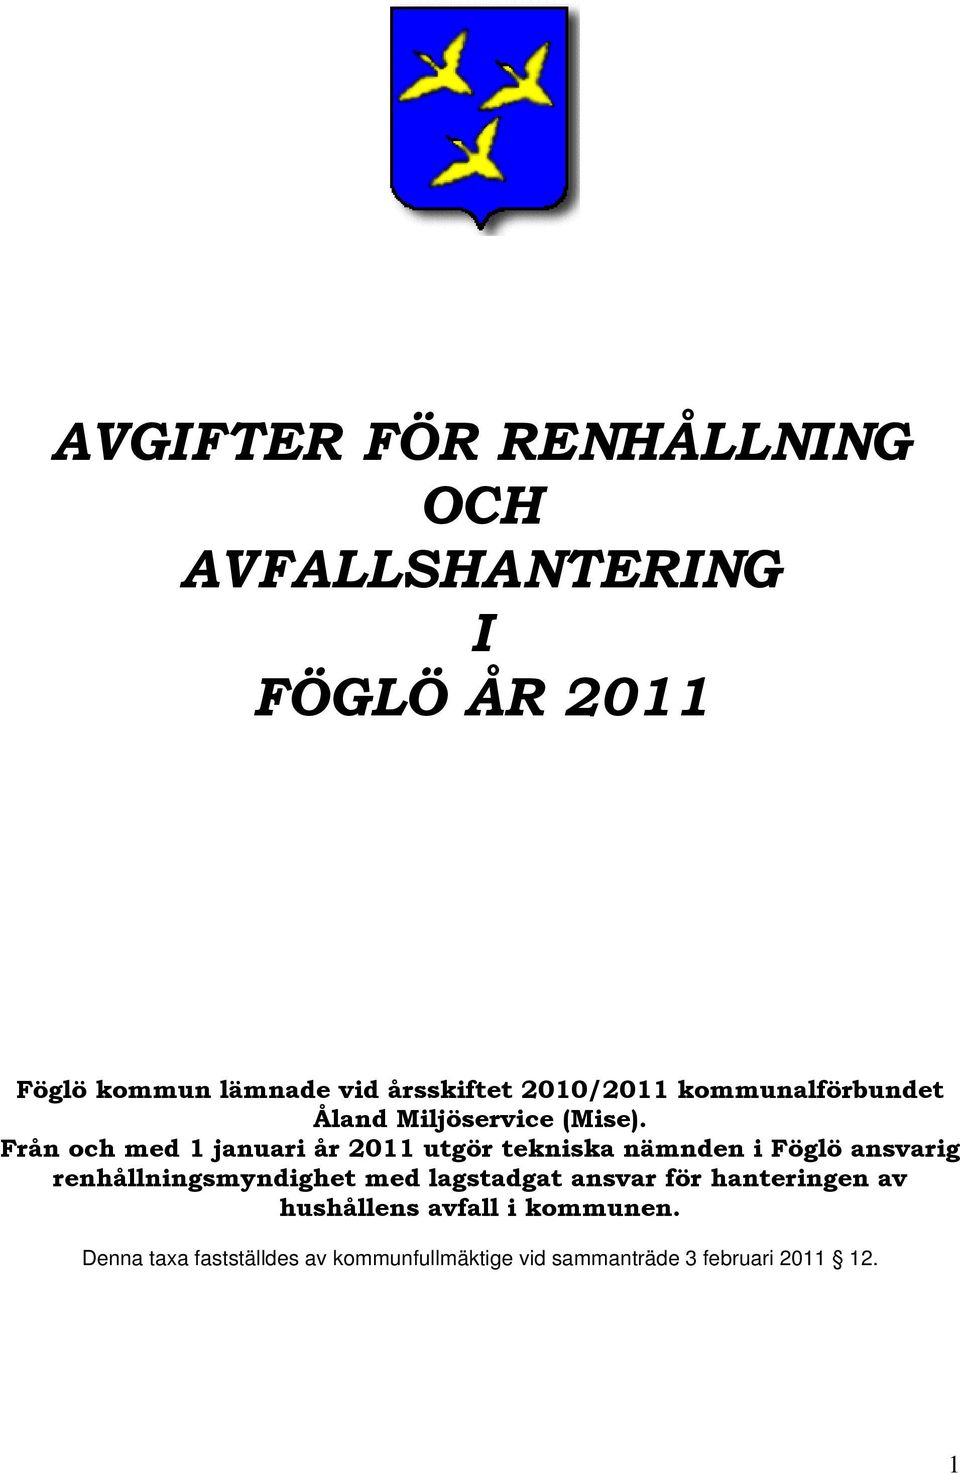 Från och med 1 januari år 2011 utgör tekniska nämnden i Föglö ansvarig renhållningsmyndighet med